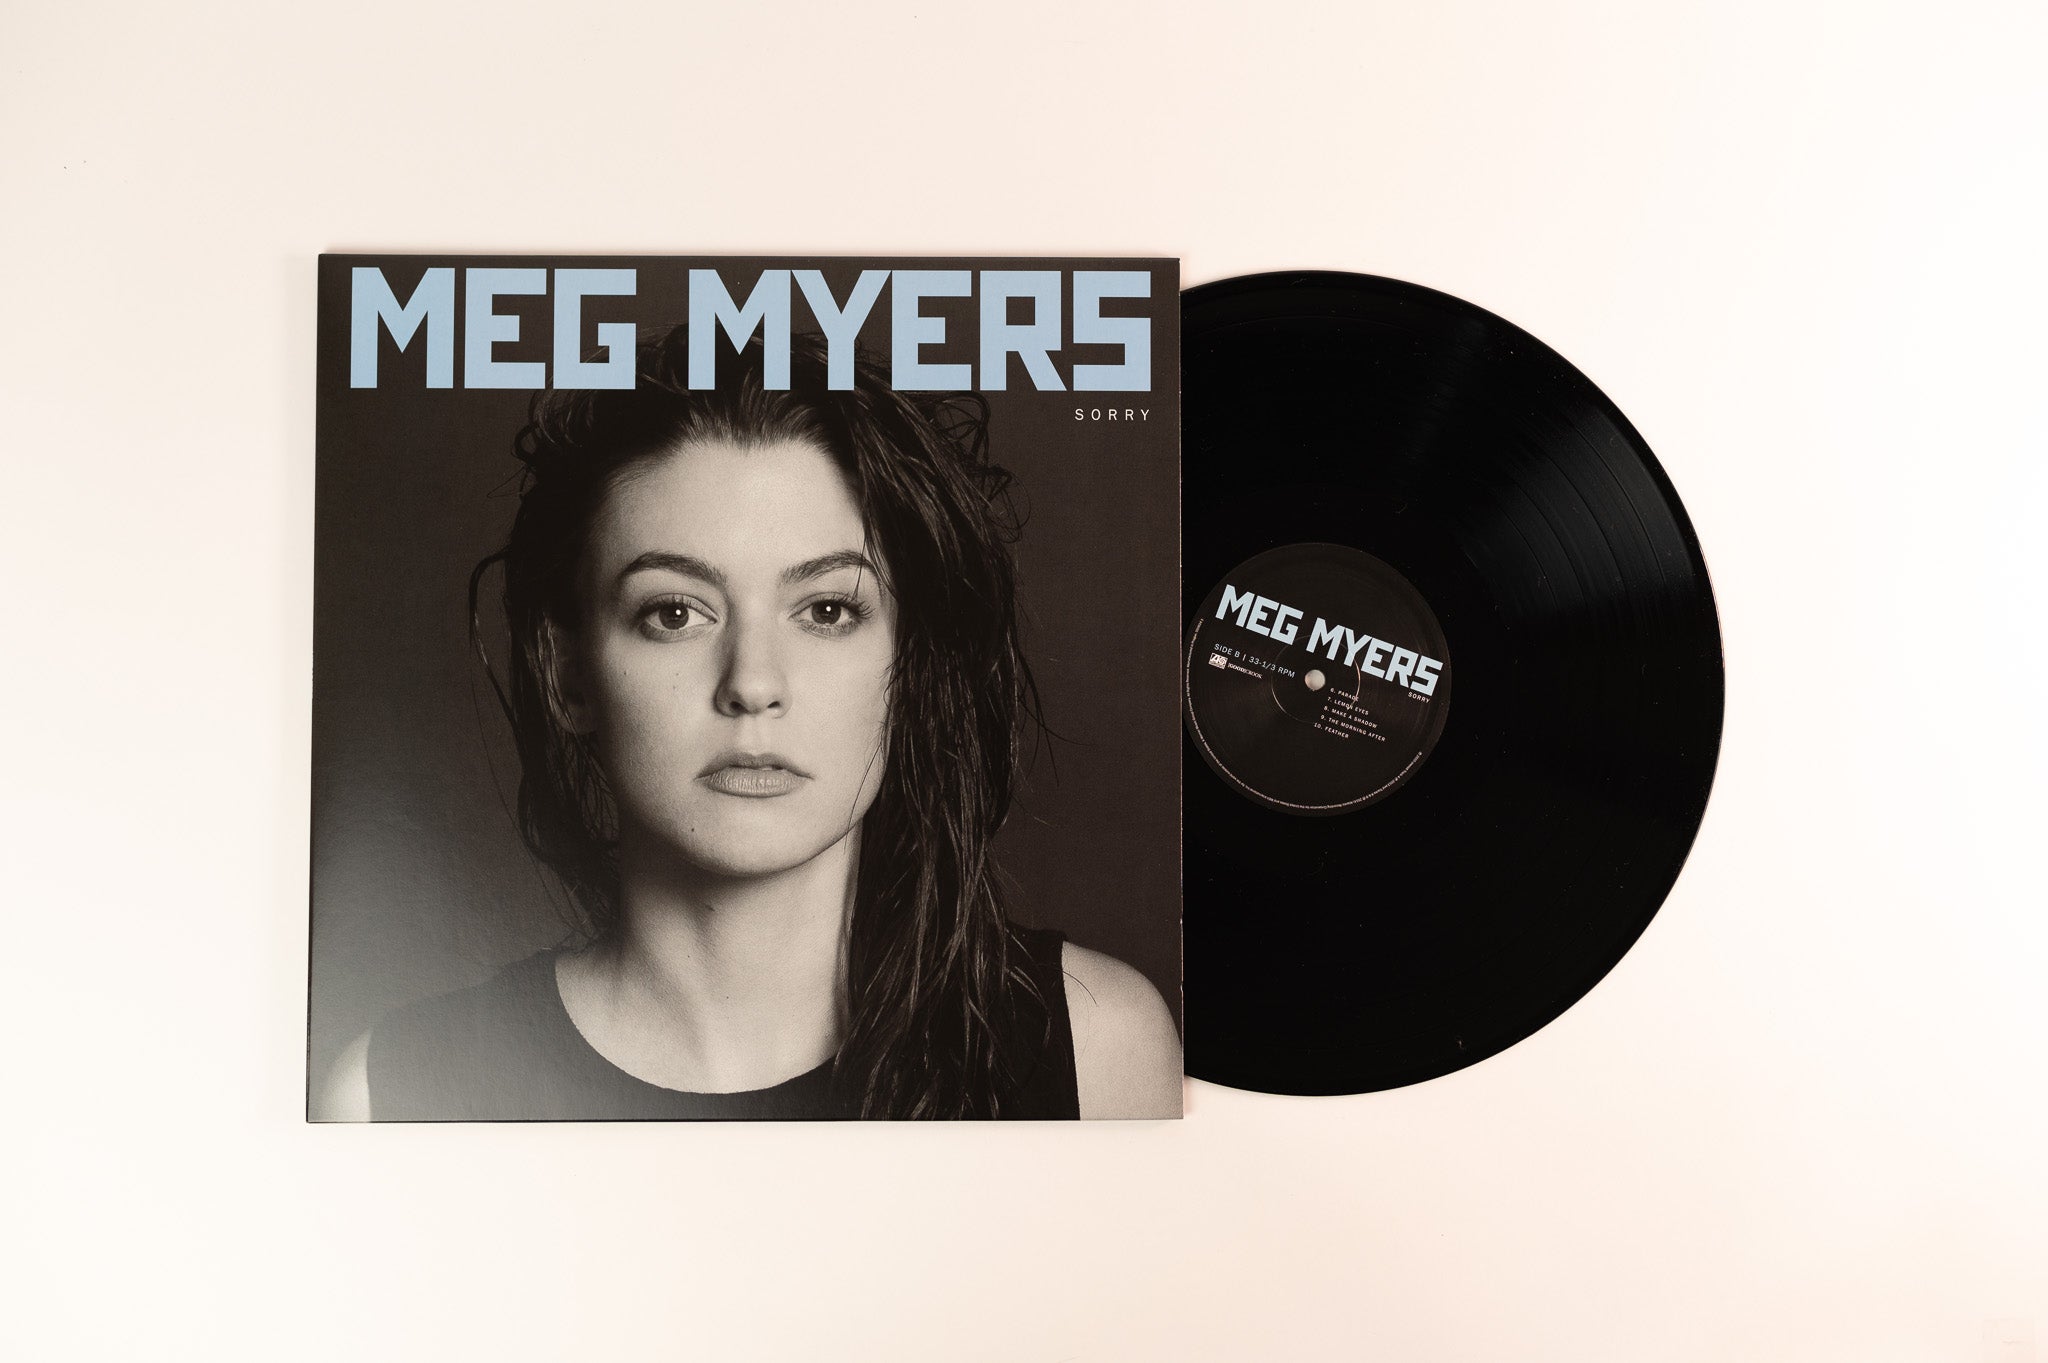 Meg Myers - Sorry on Atlantic